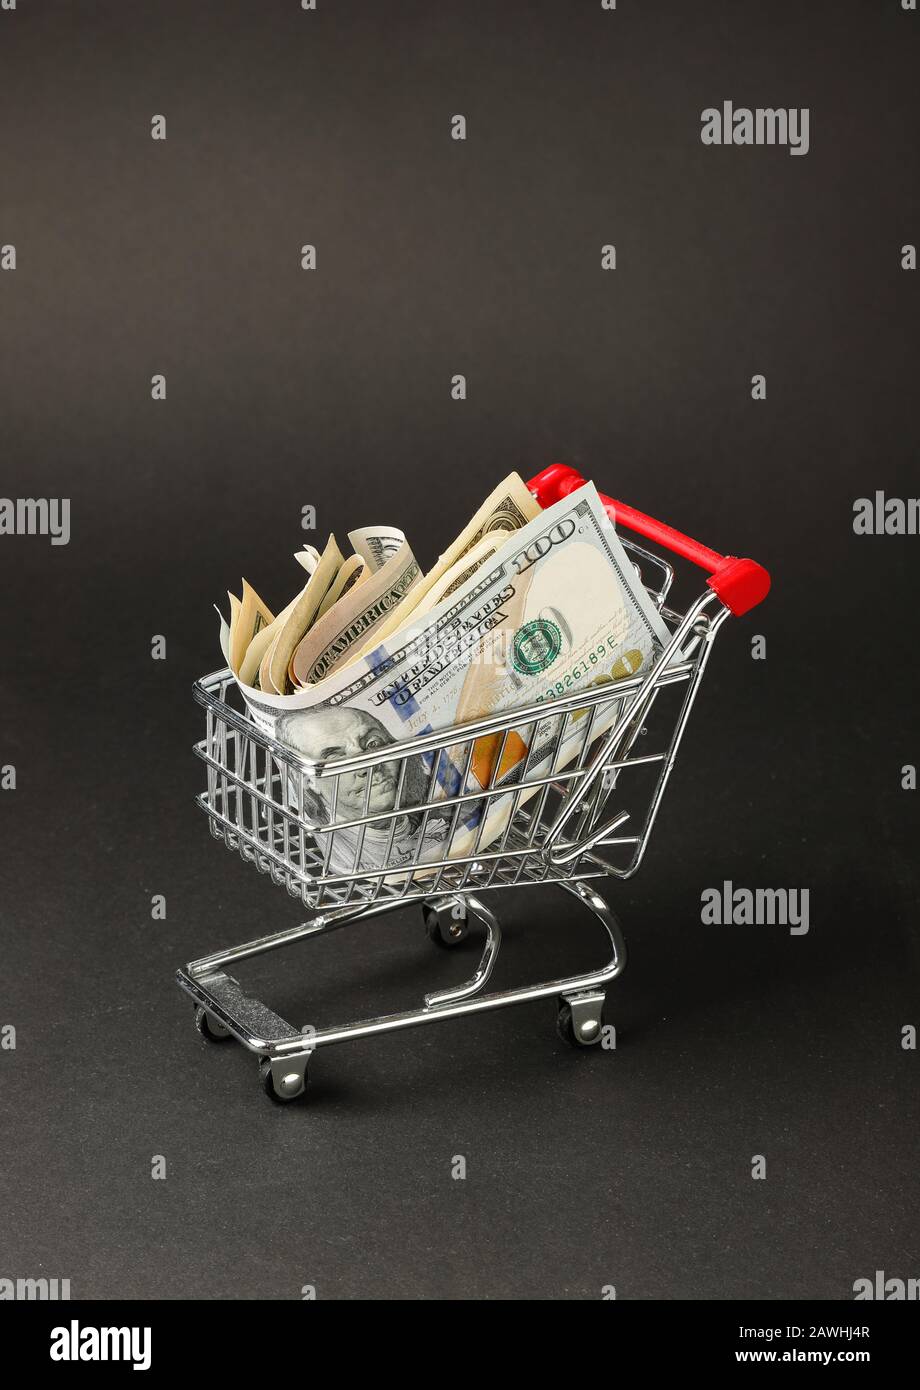 Un carrito de compras en miniatura lleno de billetes en dólares estadounidenses con fondo oscuro. Foto de stock